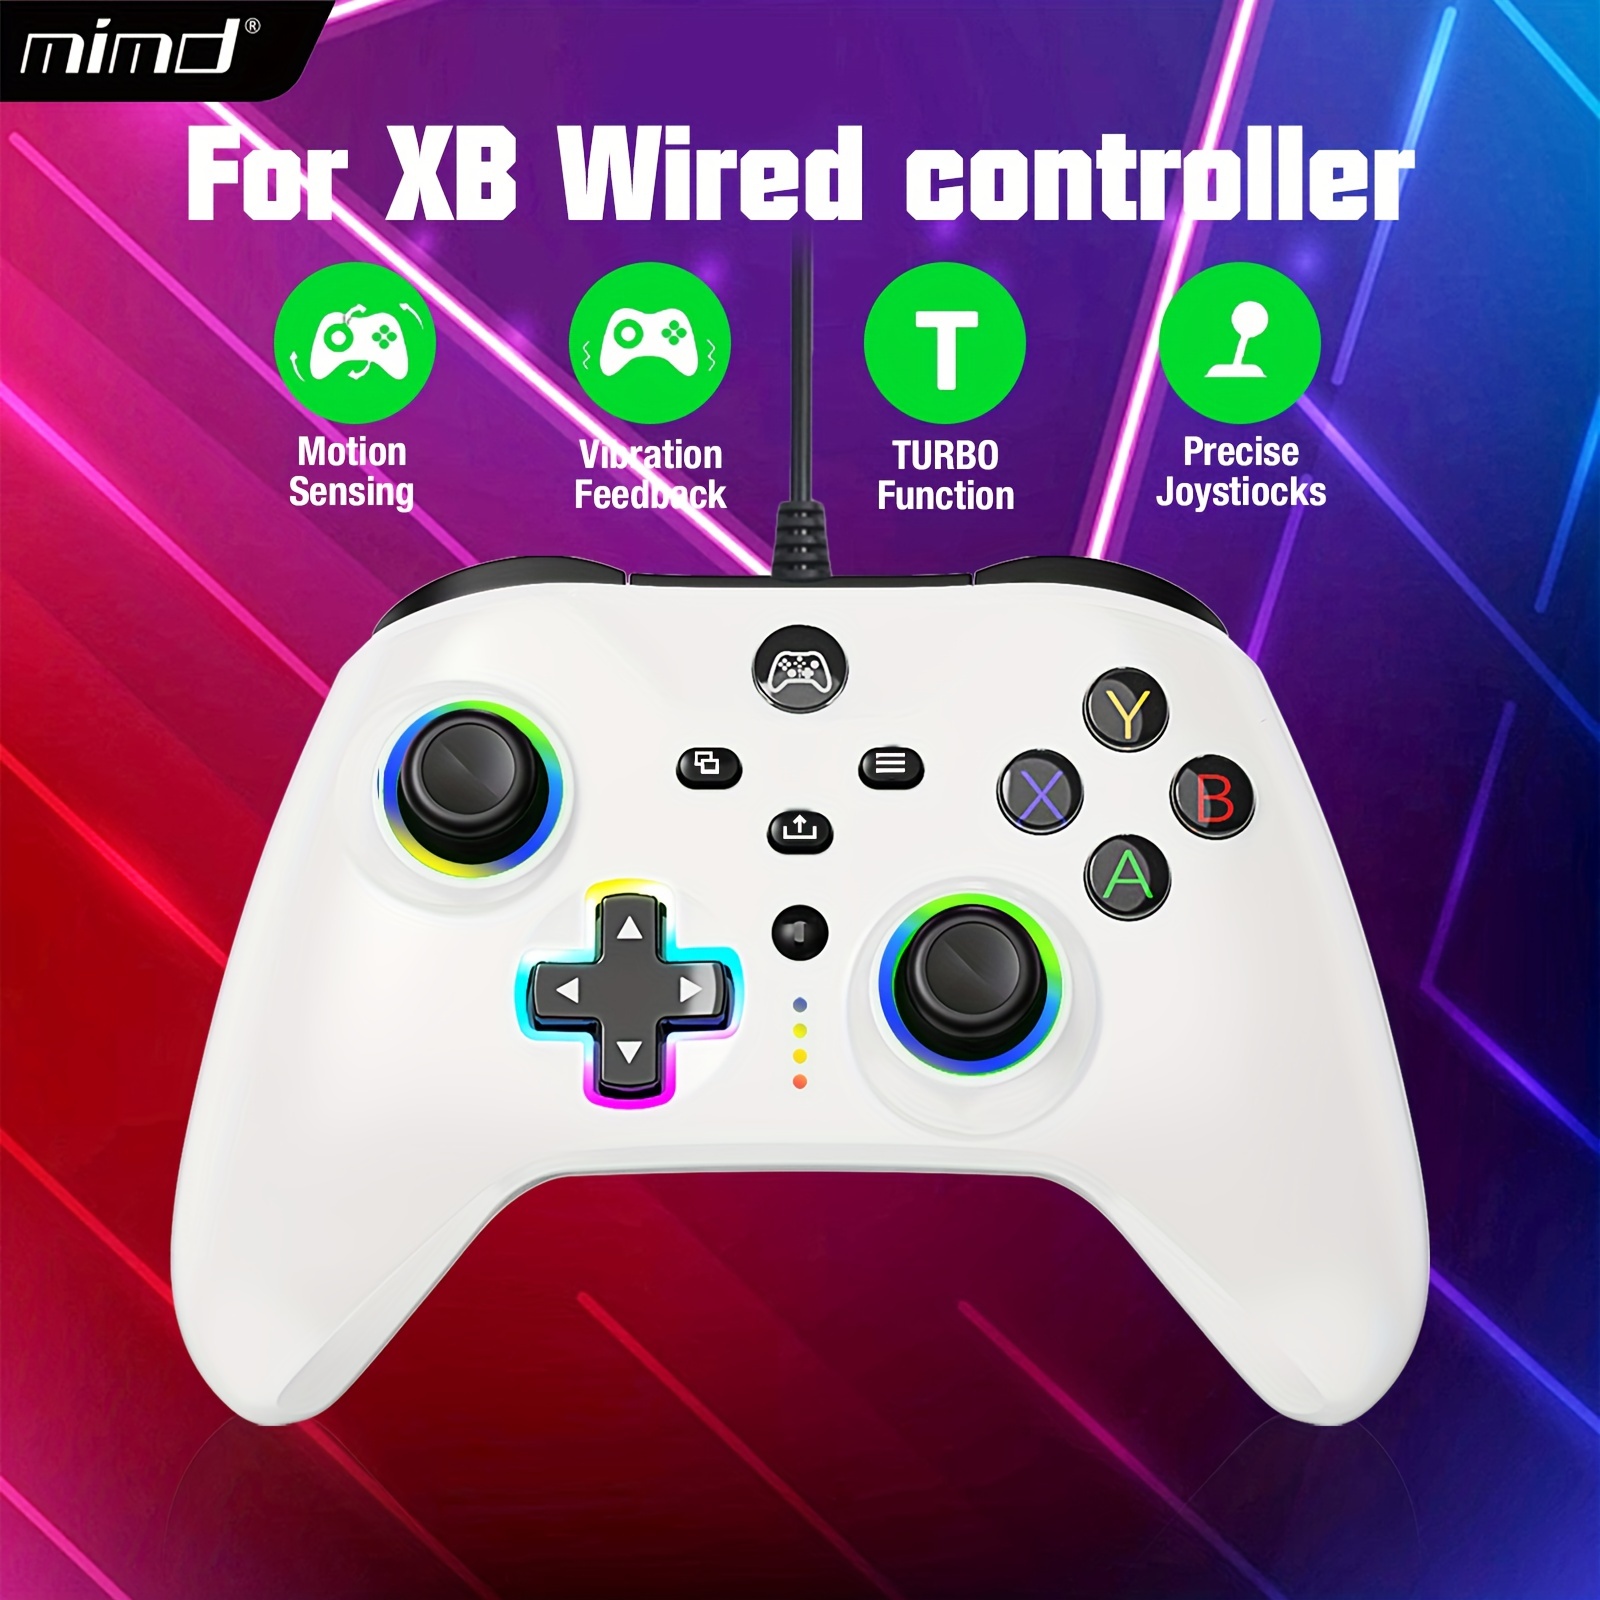 PowerA Enhanced Wired Bleu, Or USB Manette de jeu Analogique Xbox